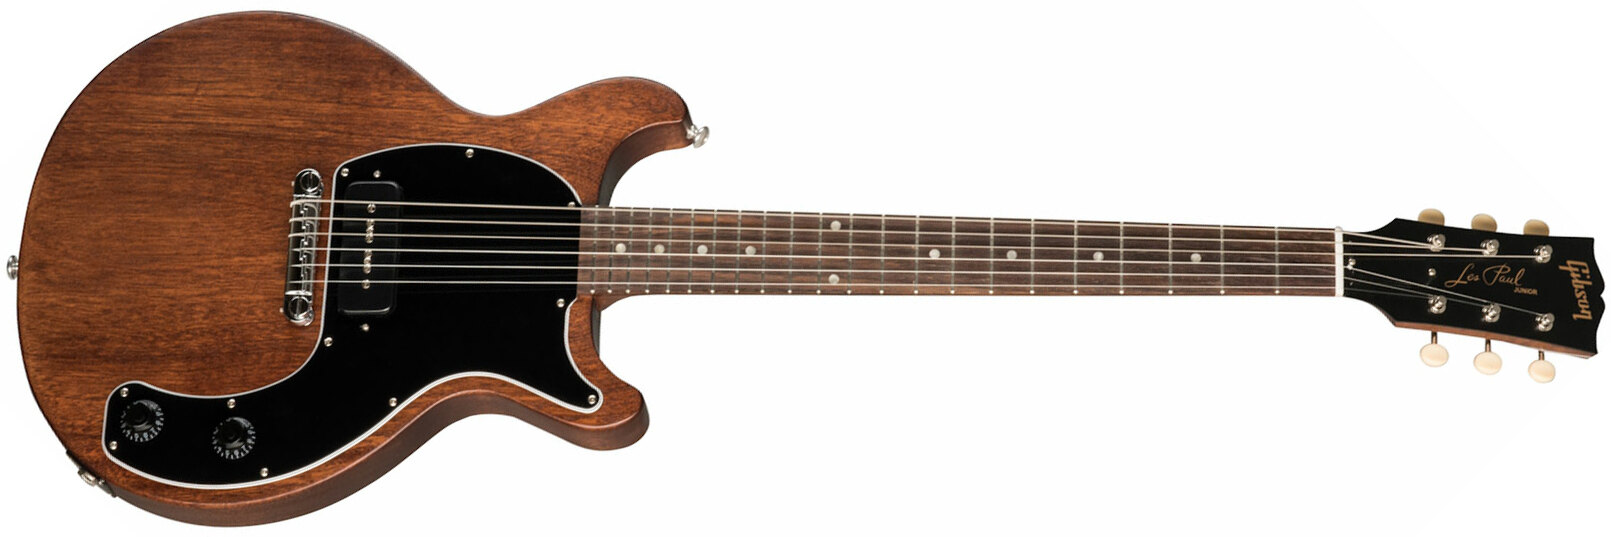 Gibson Les Paul Junior Tribute Dc Modern P90 - Worn Brown - Guitarra eléctrica de doble corte. - Main picture